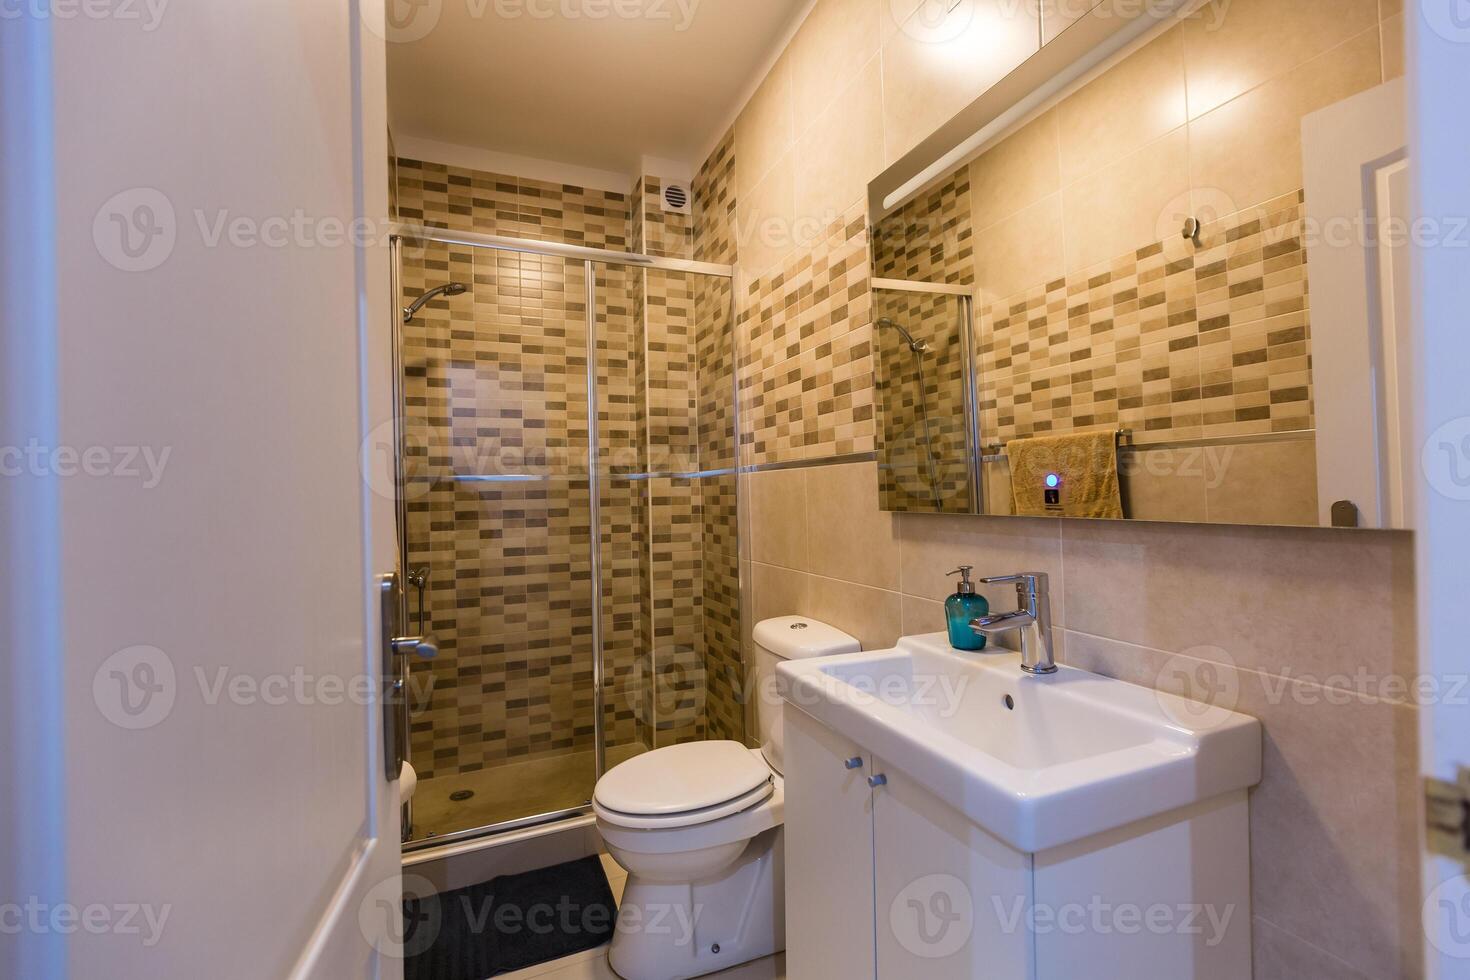 espacioso baño en gris tonos con calentado pisos, entrar ducha, doble lavabo vanidad. foto